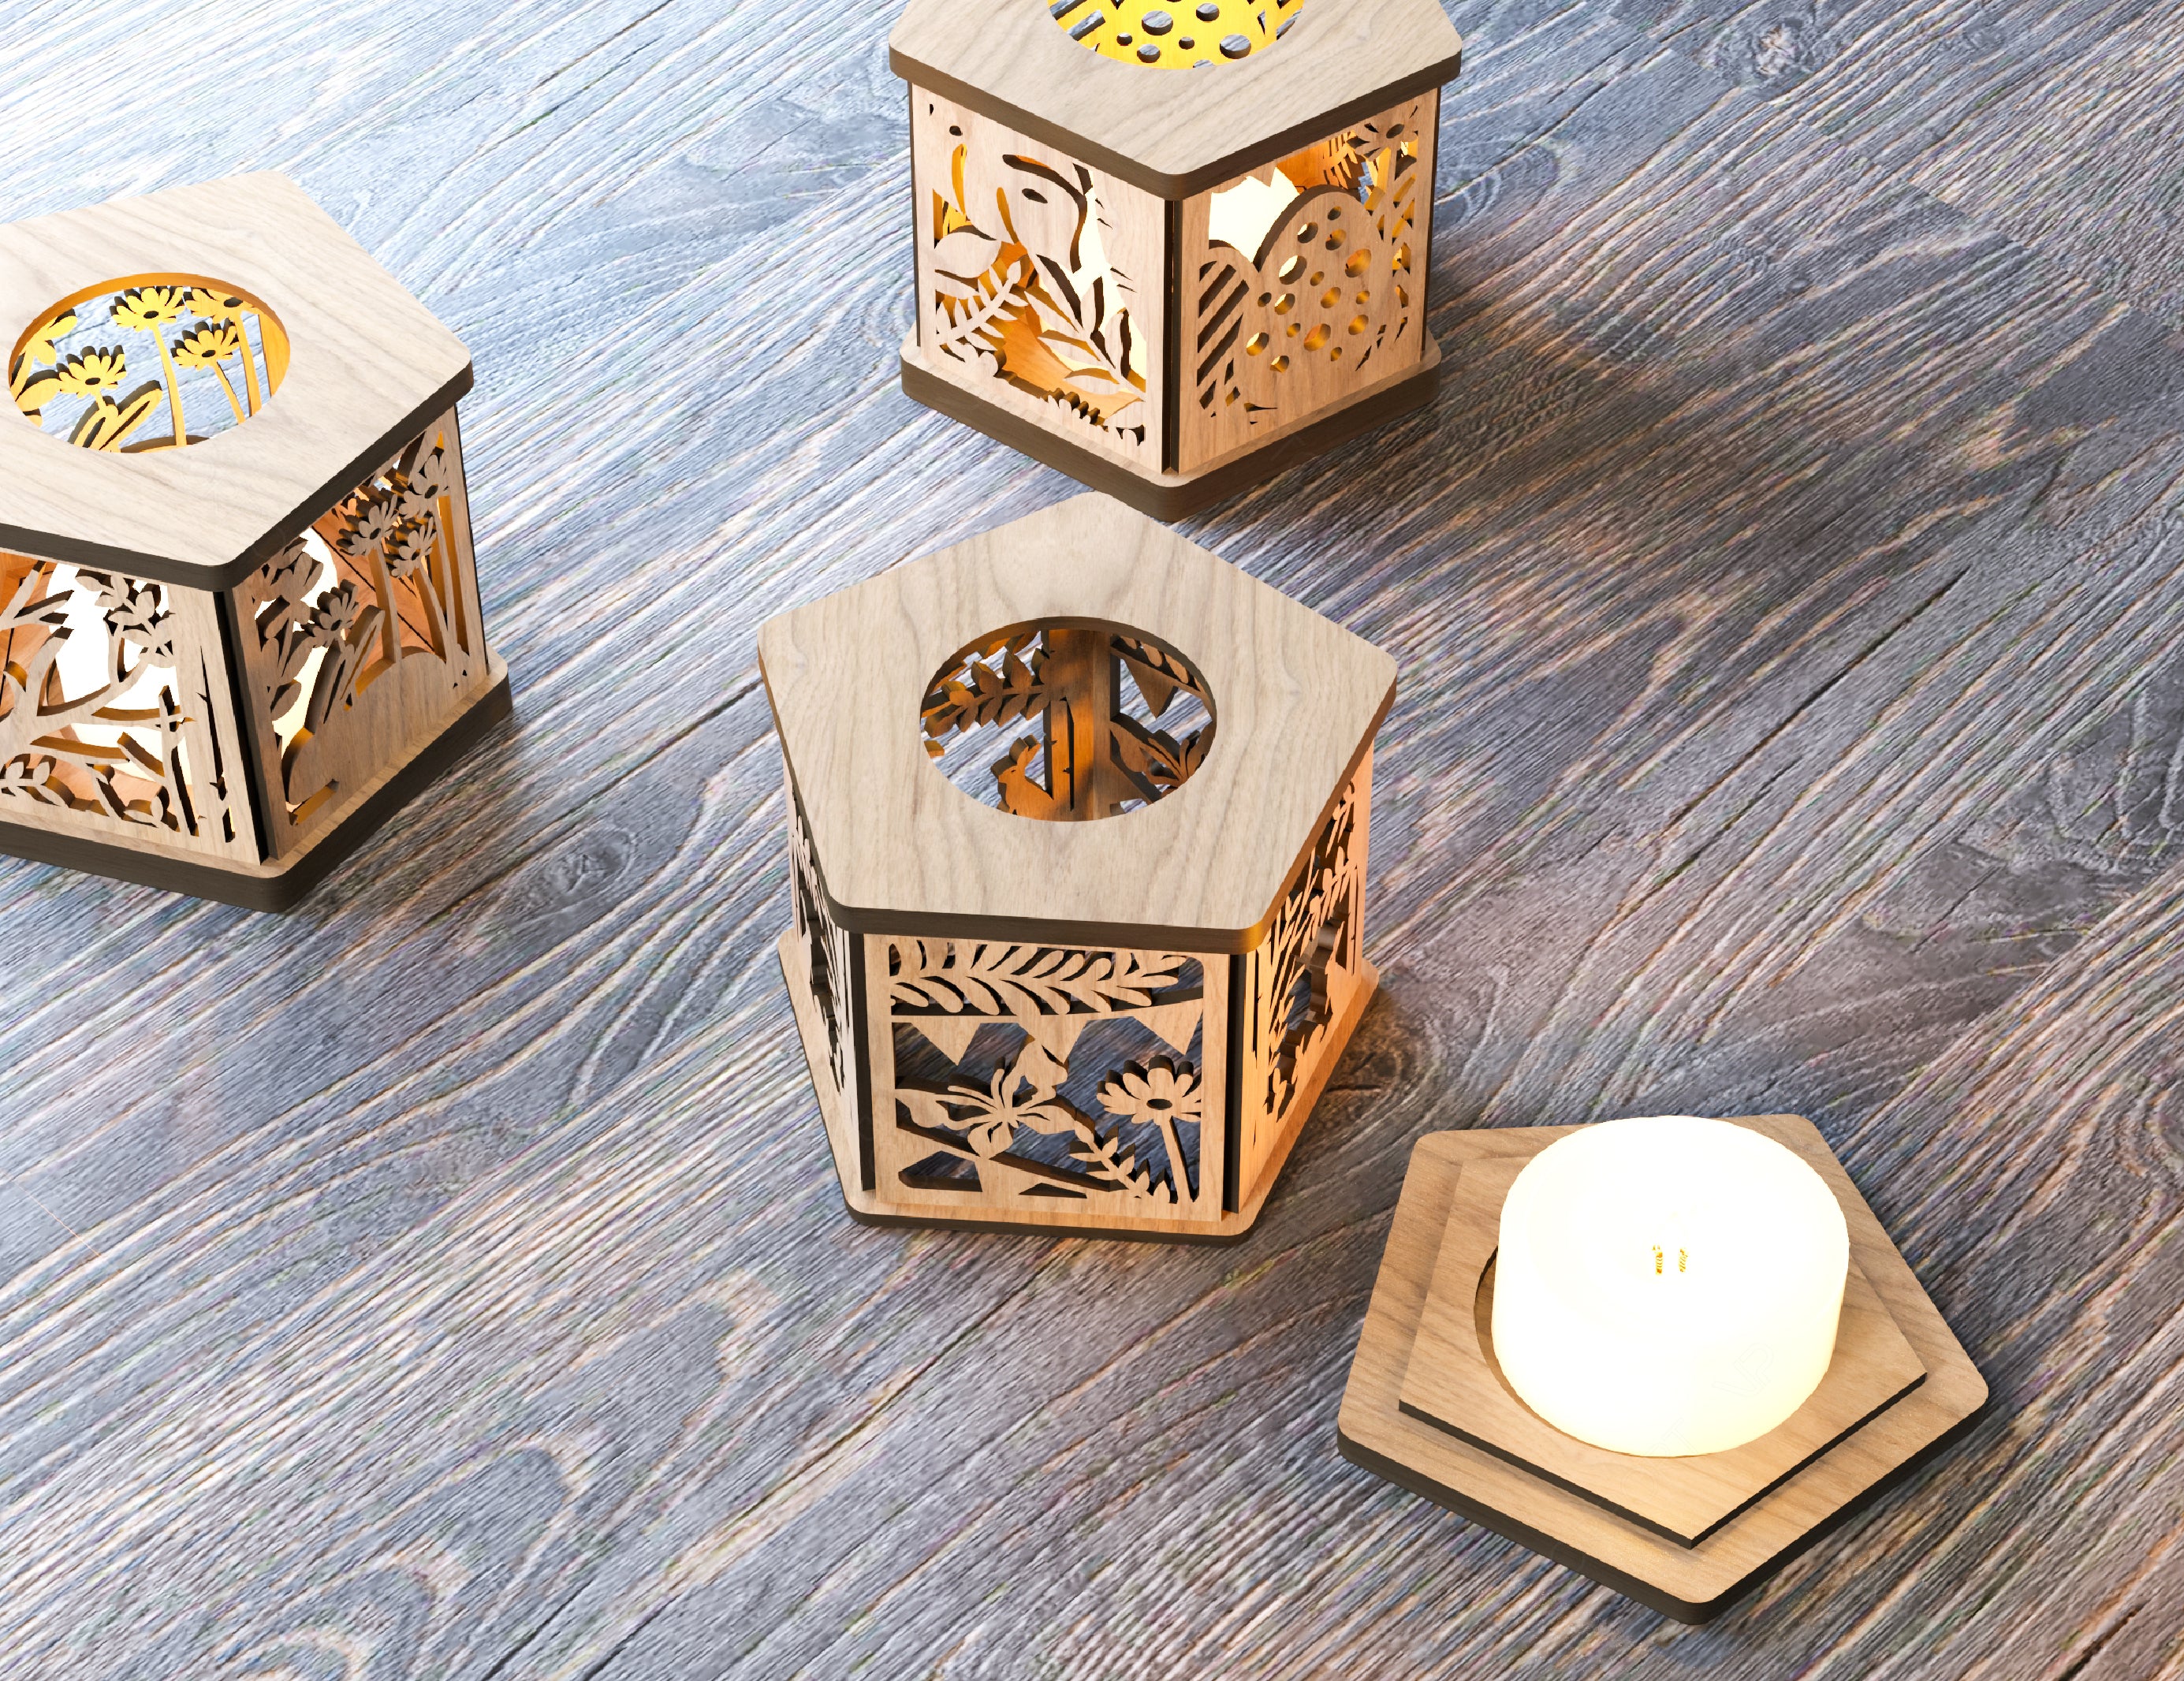 Easter Template Candle Holder Laser Cut Lamp plywood Tea light Lantern Votive Gift  Wooden table Digital Download SVG |#183|